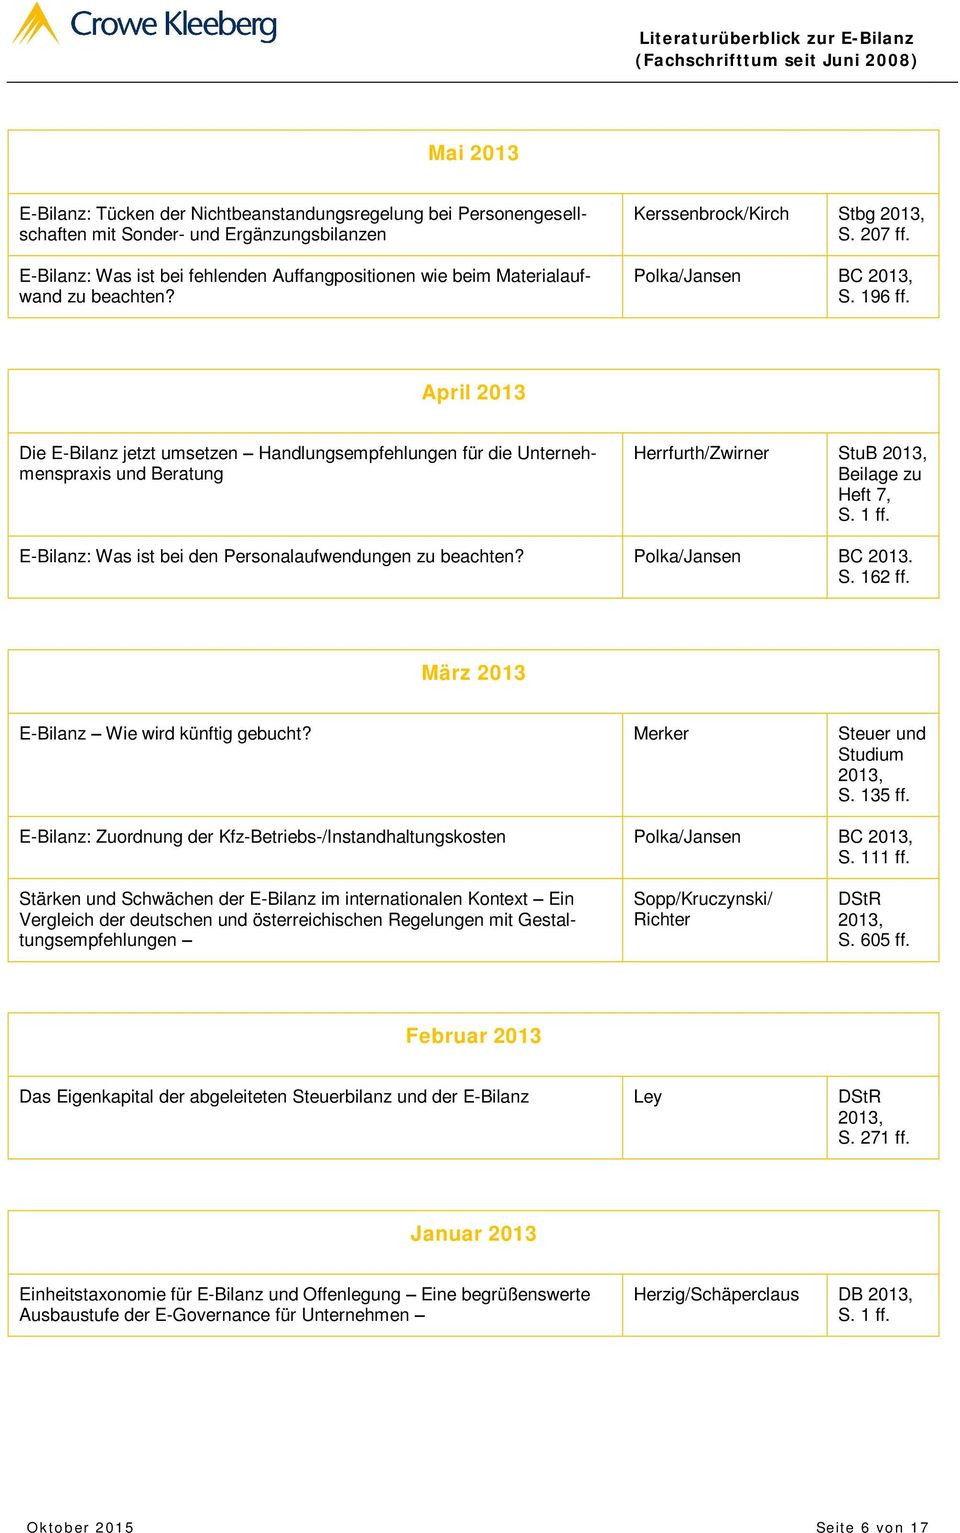 April 2013 Die E-Bilanz jetzt umsetzen Handlungsempfehlungen für die Unternehmenspraxis und Beratung Herrfurth/Zwirner StuB 2013, Beilage zu Heft 7, S. 1 ff.